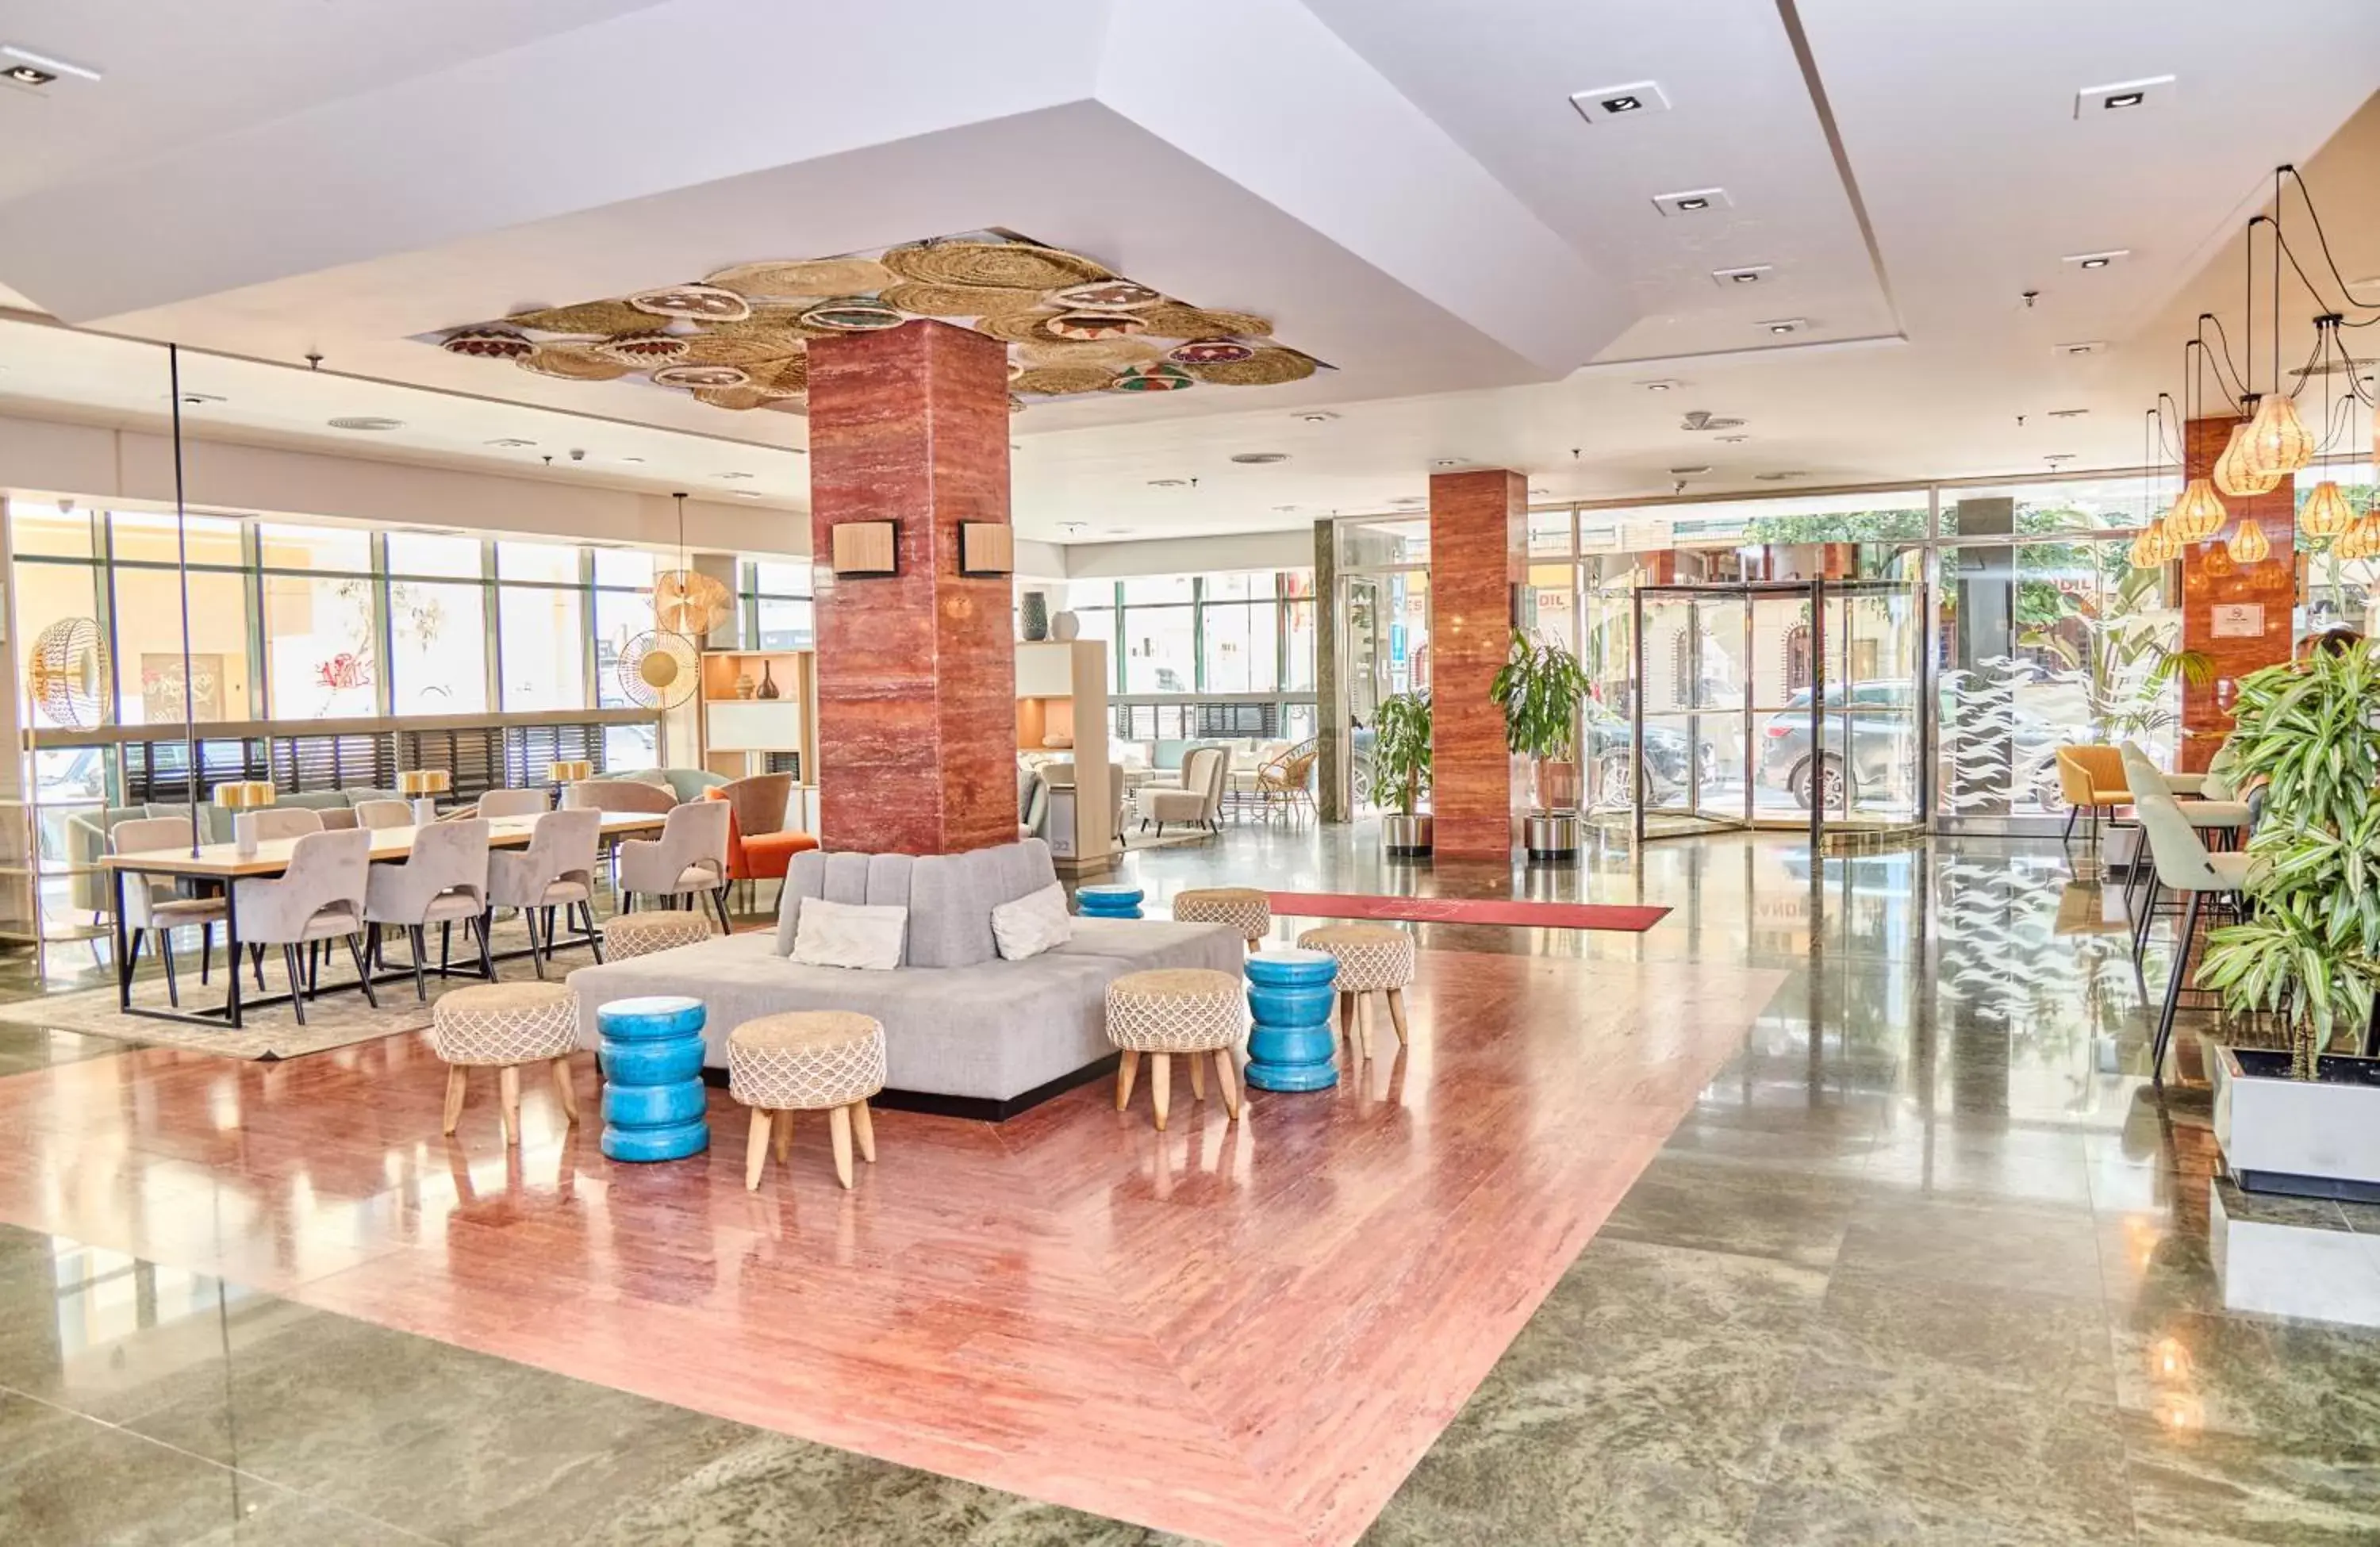 Lobby or reception in Leonardo Hotel Fuengirola Costa del Sol